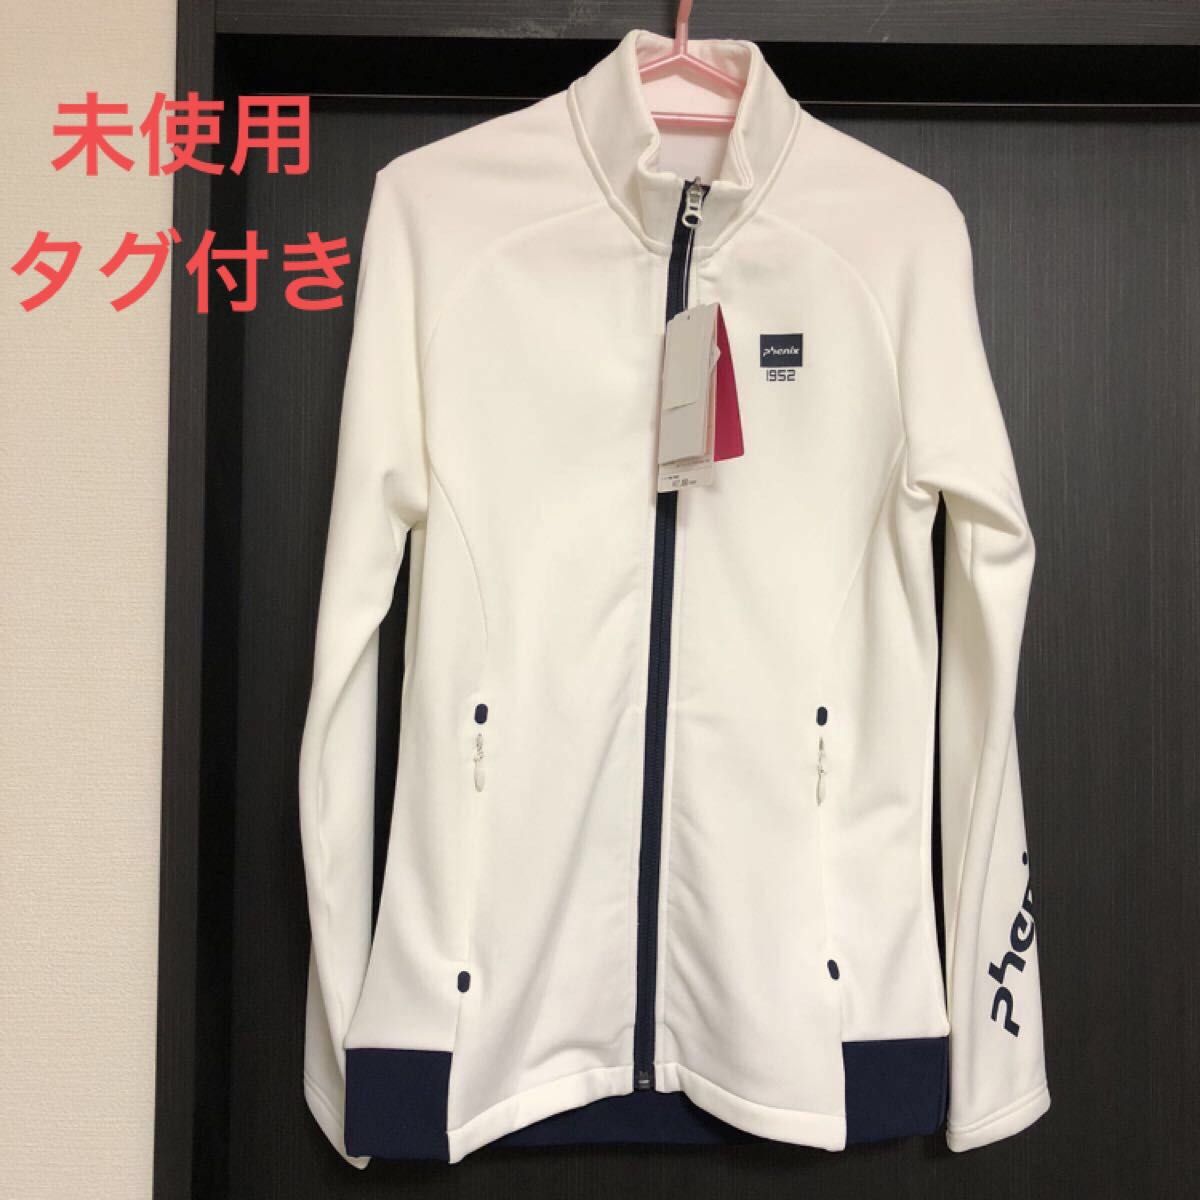 【新品未使用】 phenix フリースジャケット 定価17000円 レディース Lサイズ